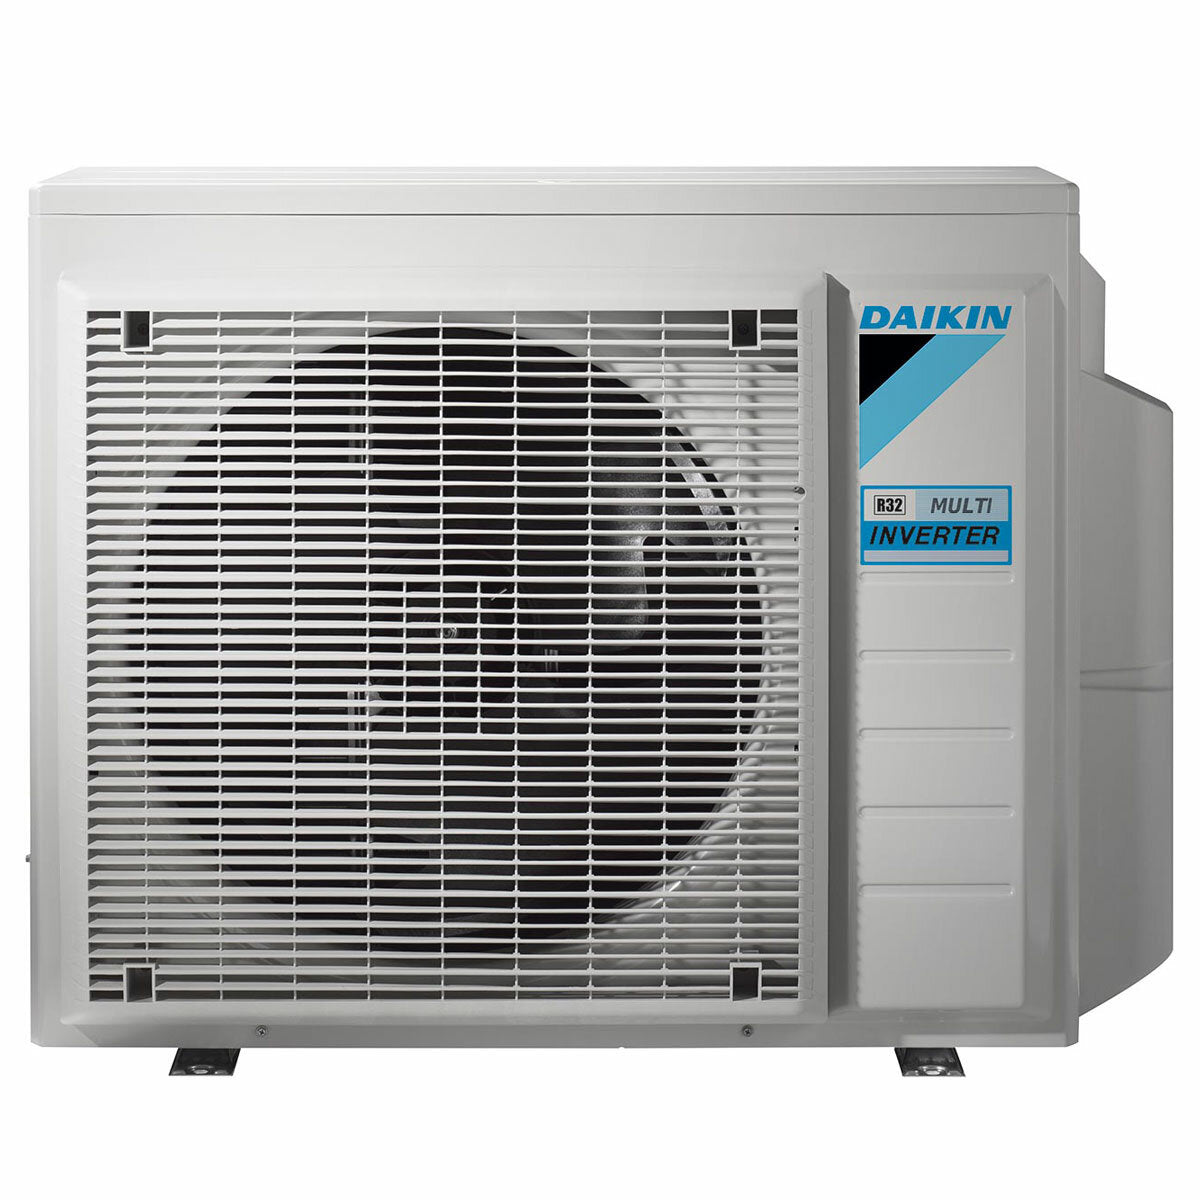 Daikin Emura 3 air conditioner penta split 7000+9000+9000+9000+18000 BTU inverter A++ wifi outdoor unit 7.8 kW Silver